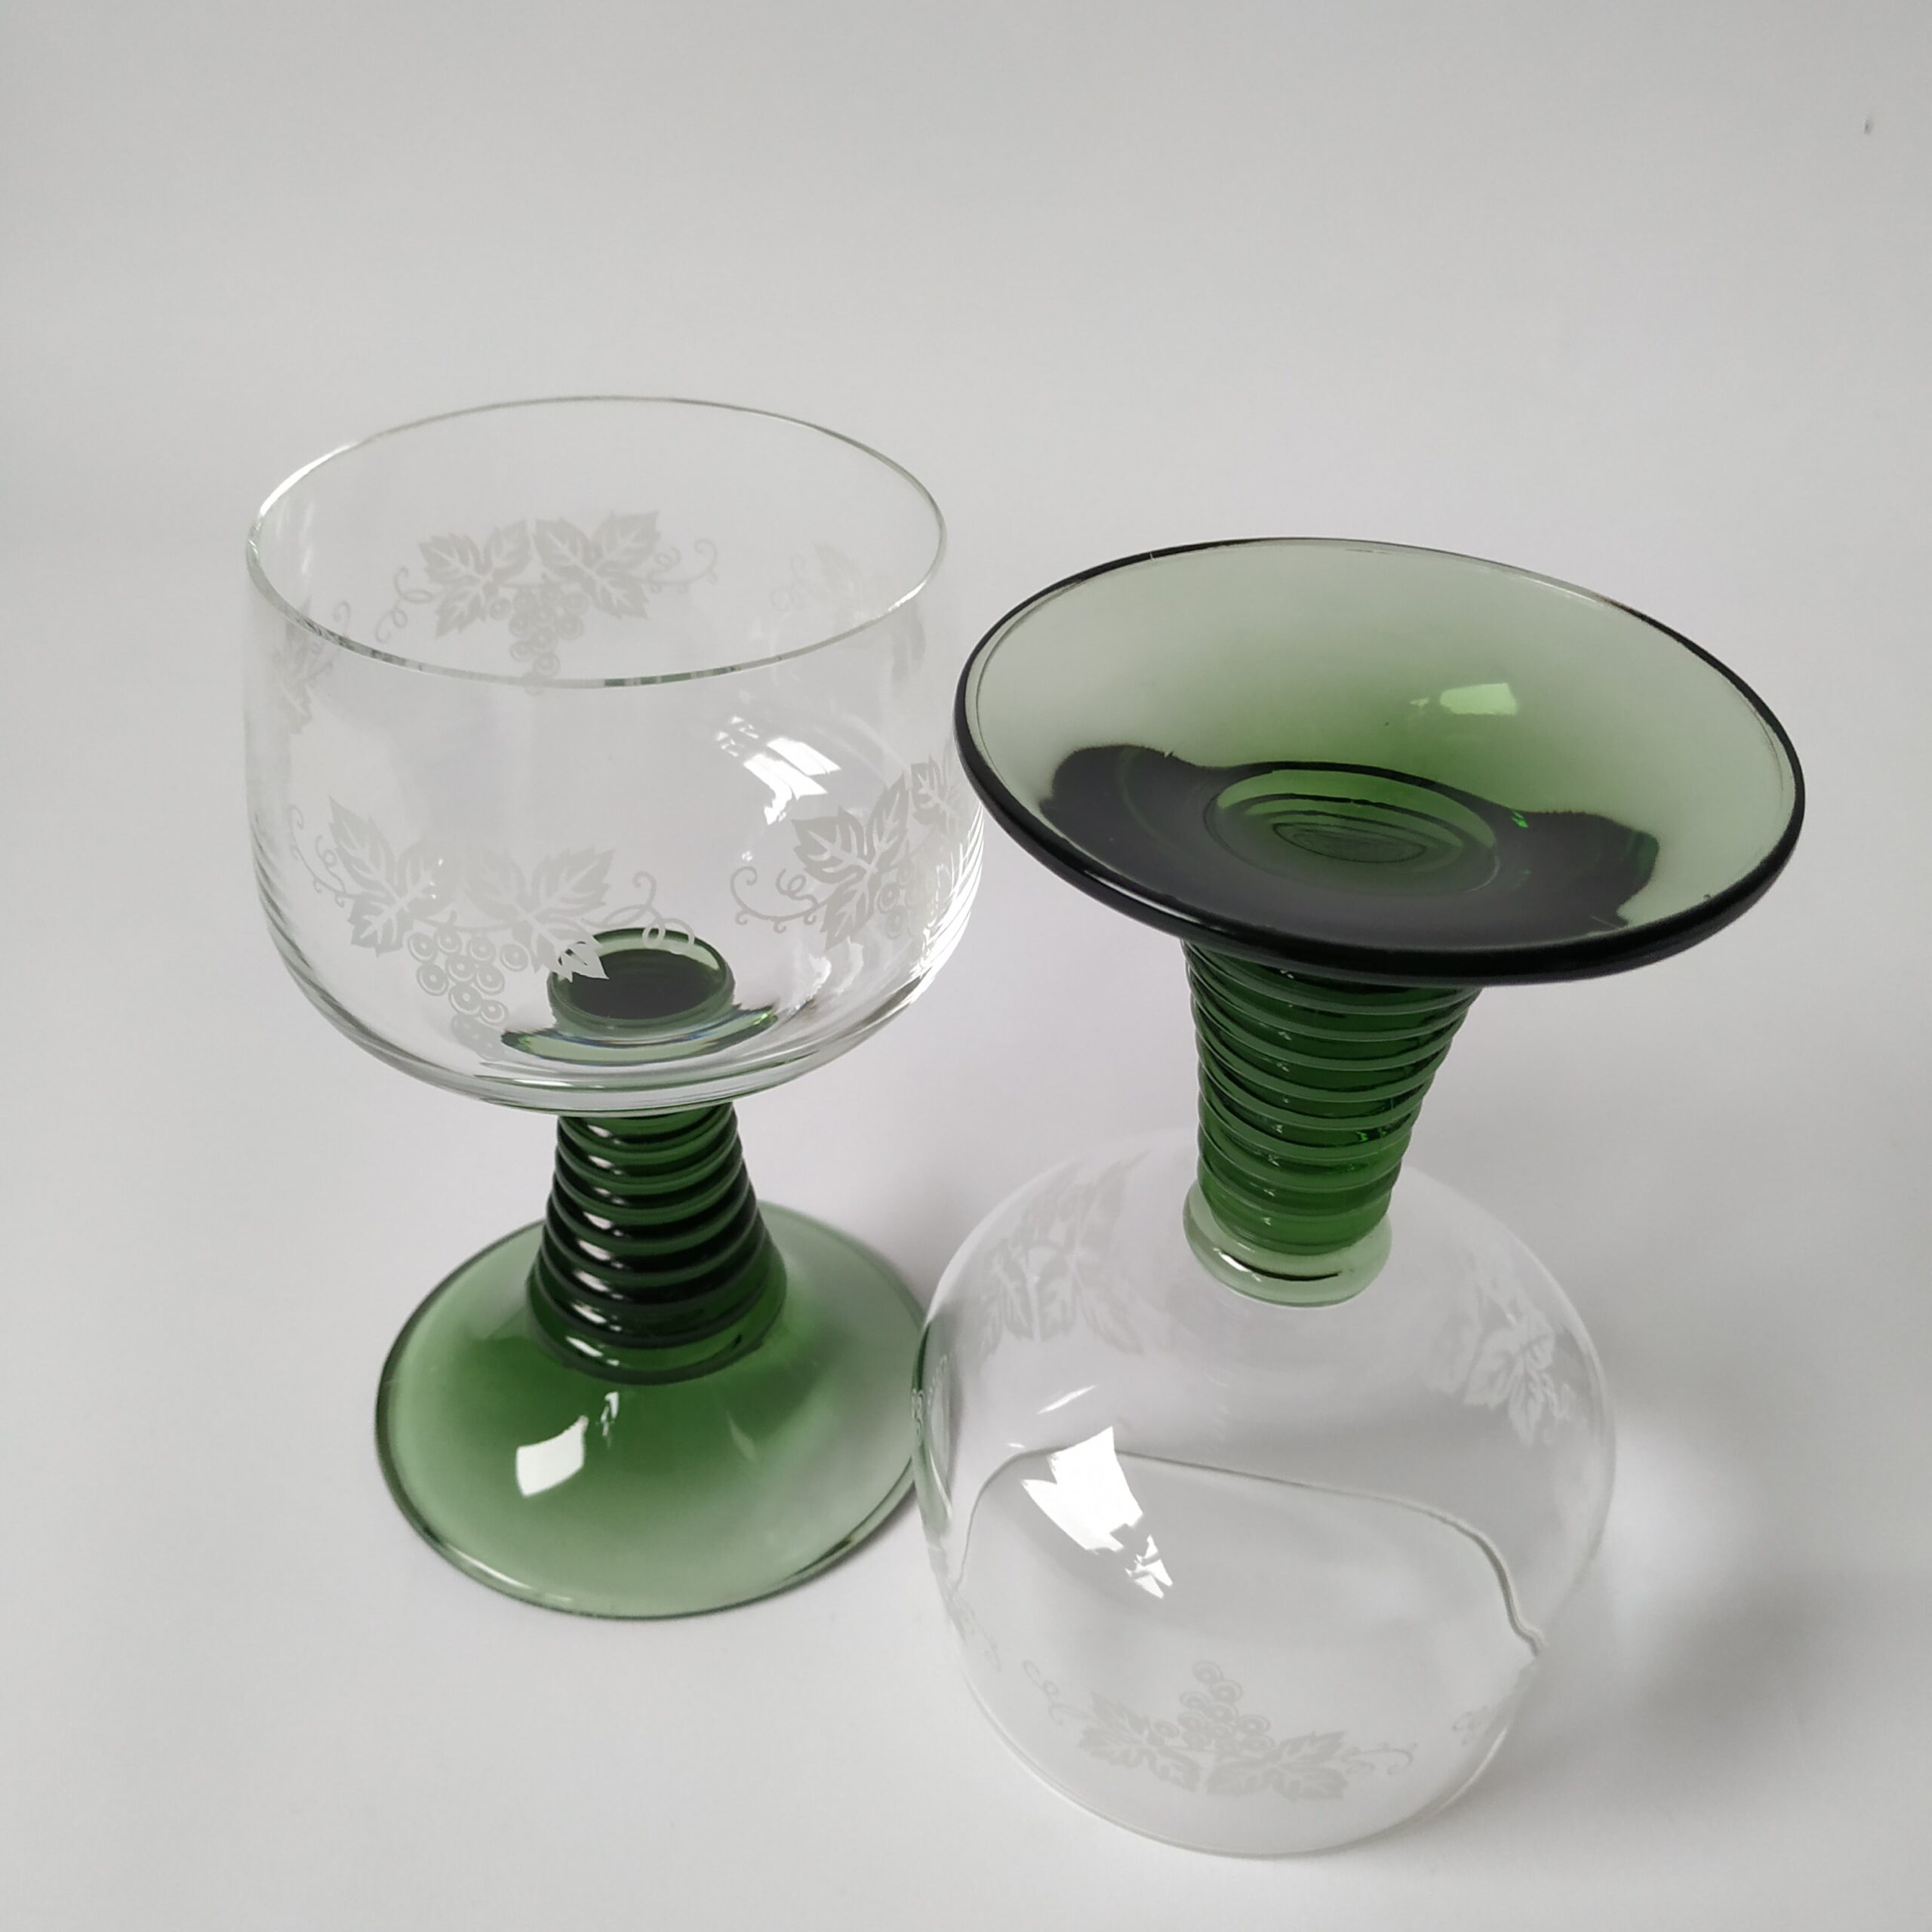 Wijnglazen – moezelglazen met groene voet en afbeelding druiventak – inhoud 200 ml – 2 stuks (3)